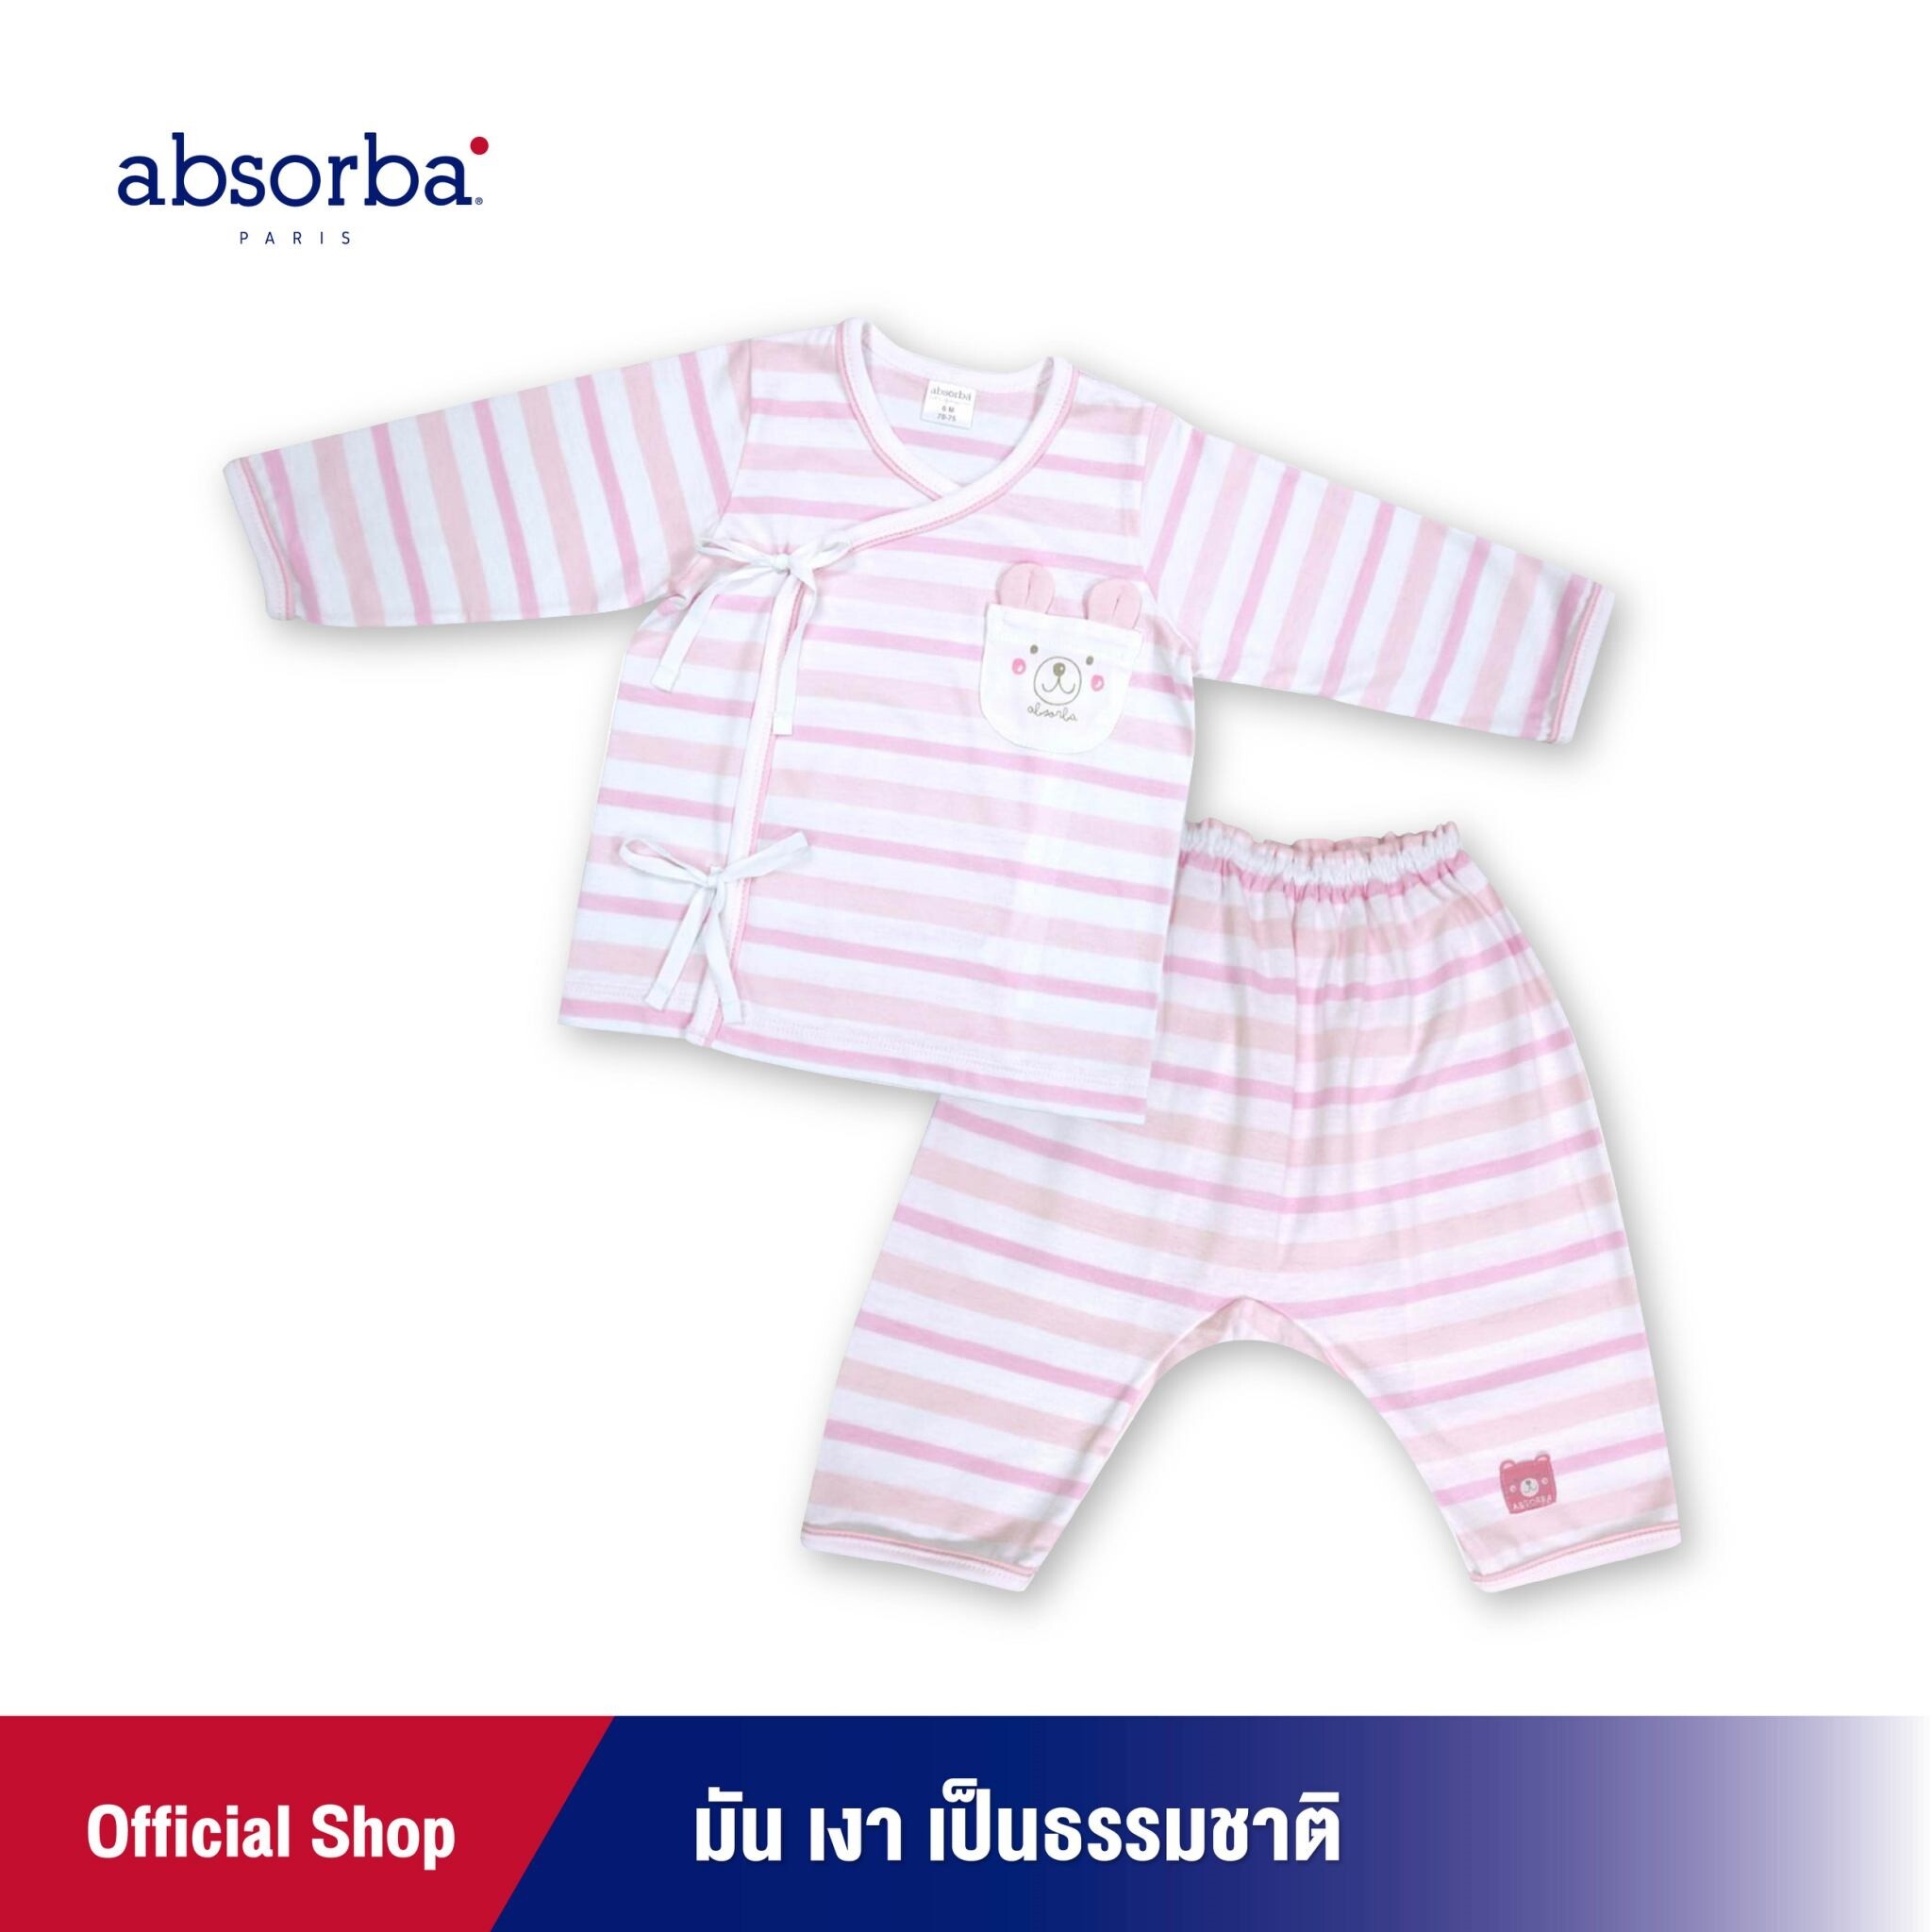 absorba (แอ๊บซอร์บา) ชุดเสื้อป้ายเด็กแขนยาว หรือ ชุดเสื้อผูกหน้าแขนยาว ลายริ้วสีชมพู สำหรับเด็กแรก ถึง 12 เดือน - R1R5003PI